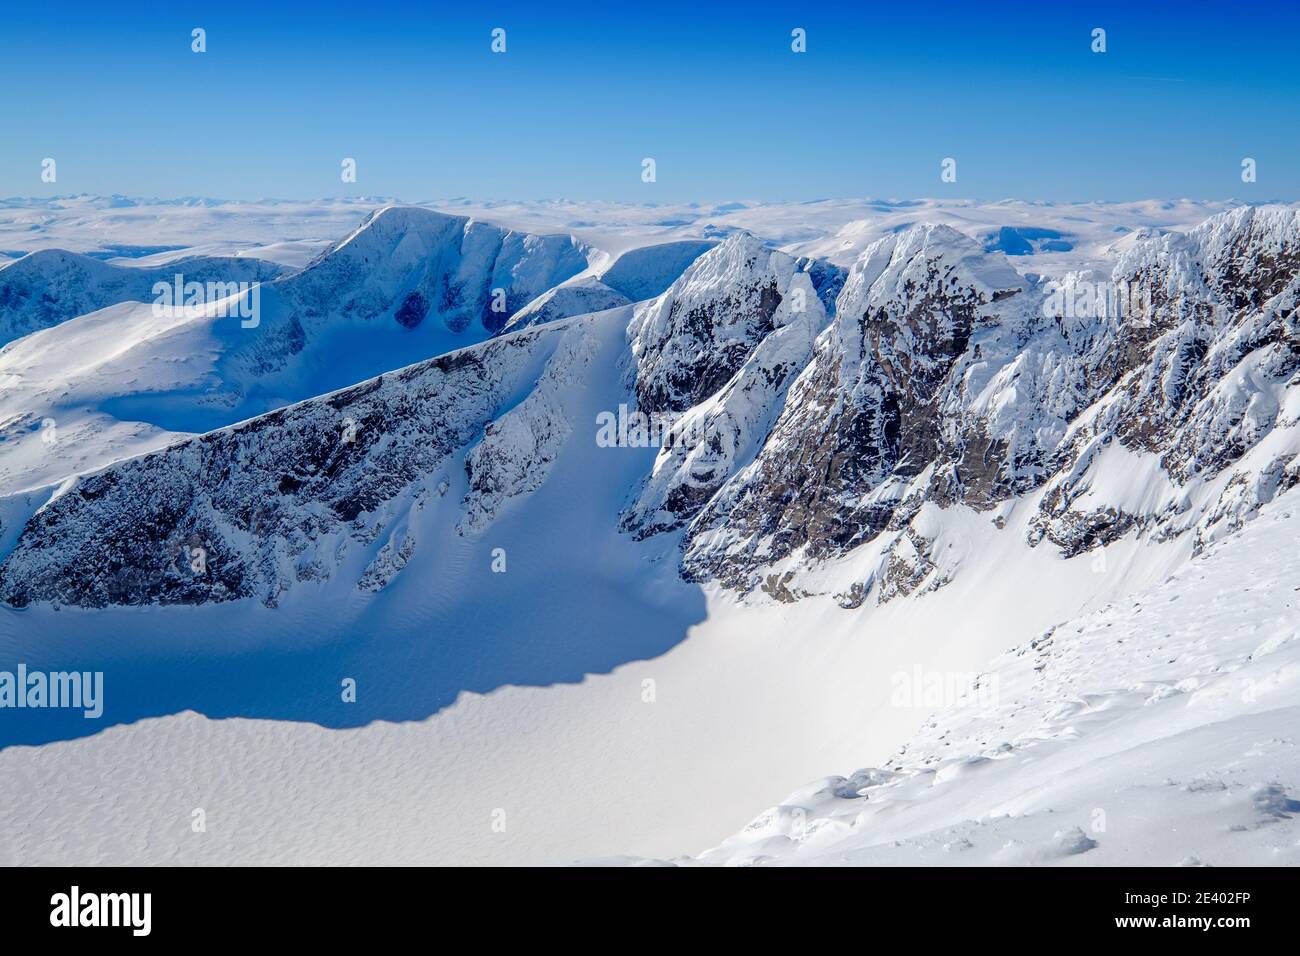 Il gruppo montuoso Snohetta a Dovre, Norvegia Foto Stock